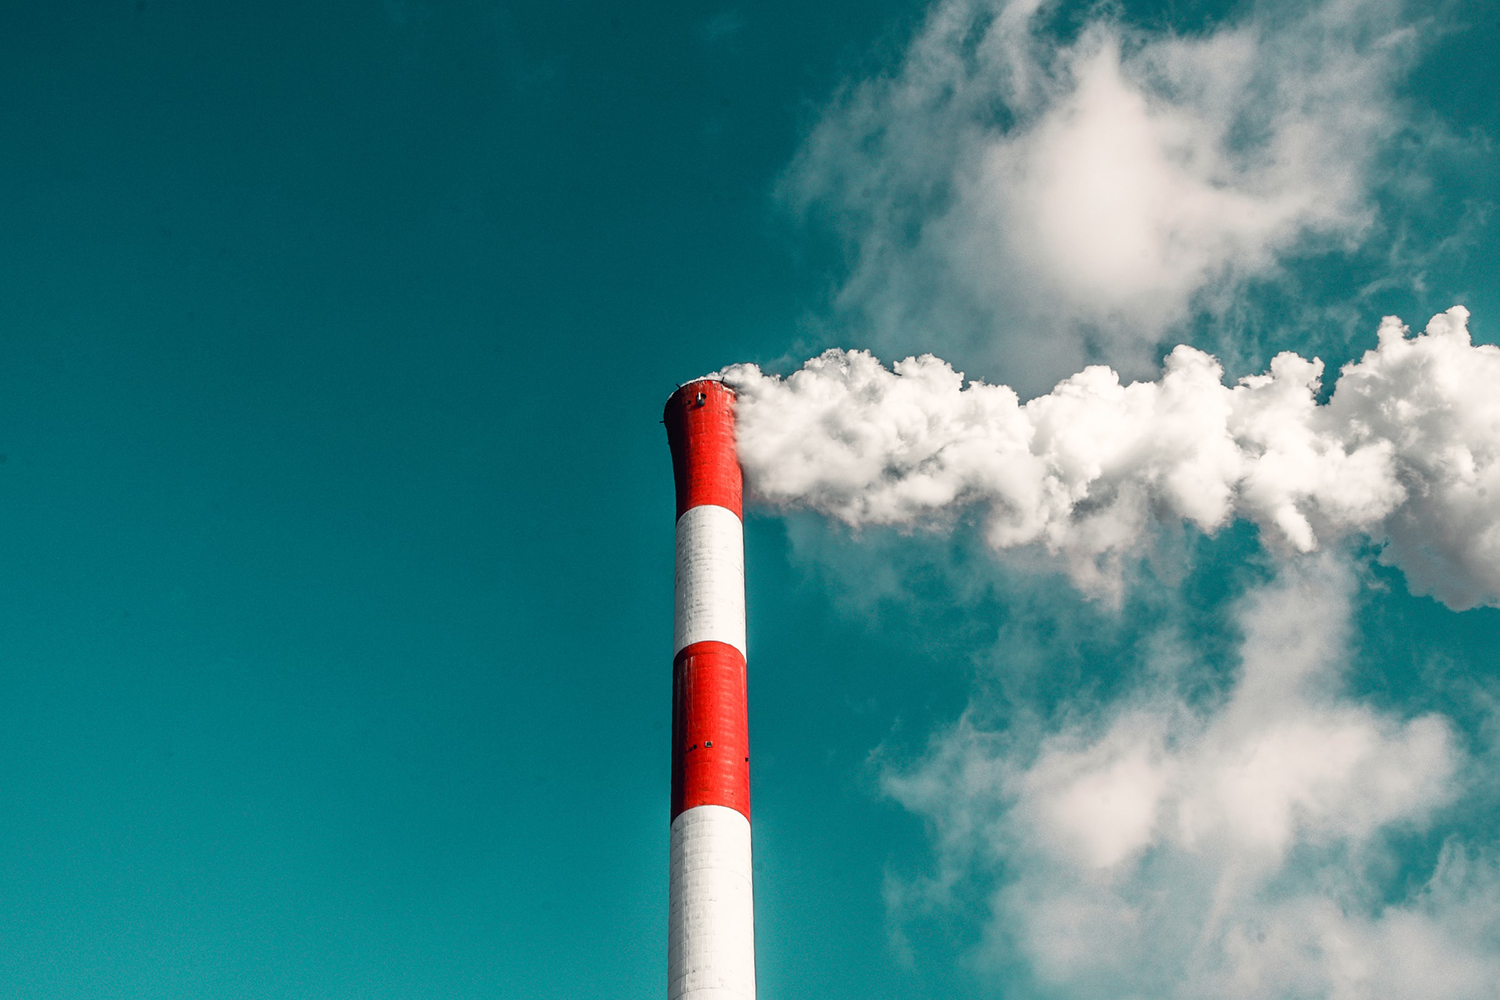 Snelle opschaling CCS nodig om klimaatdoelen te halen